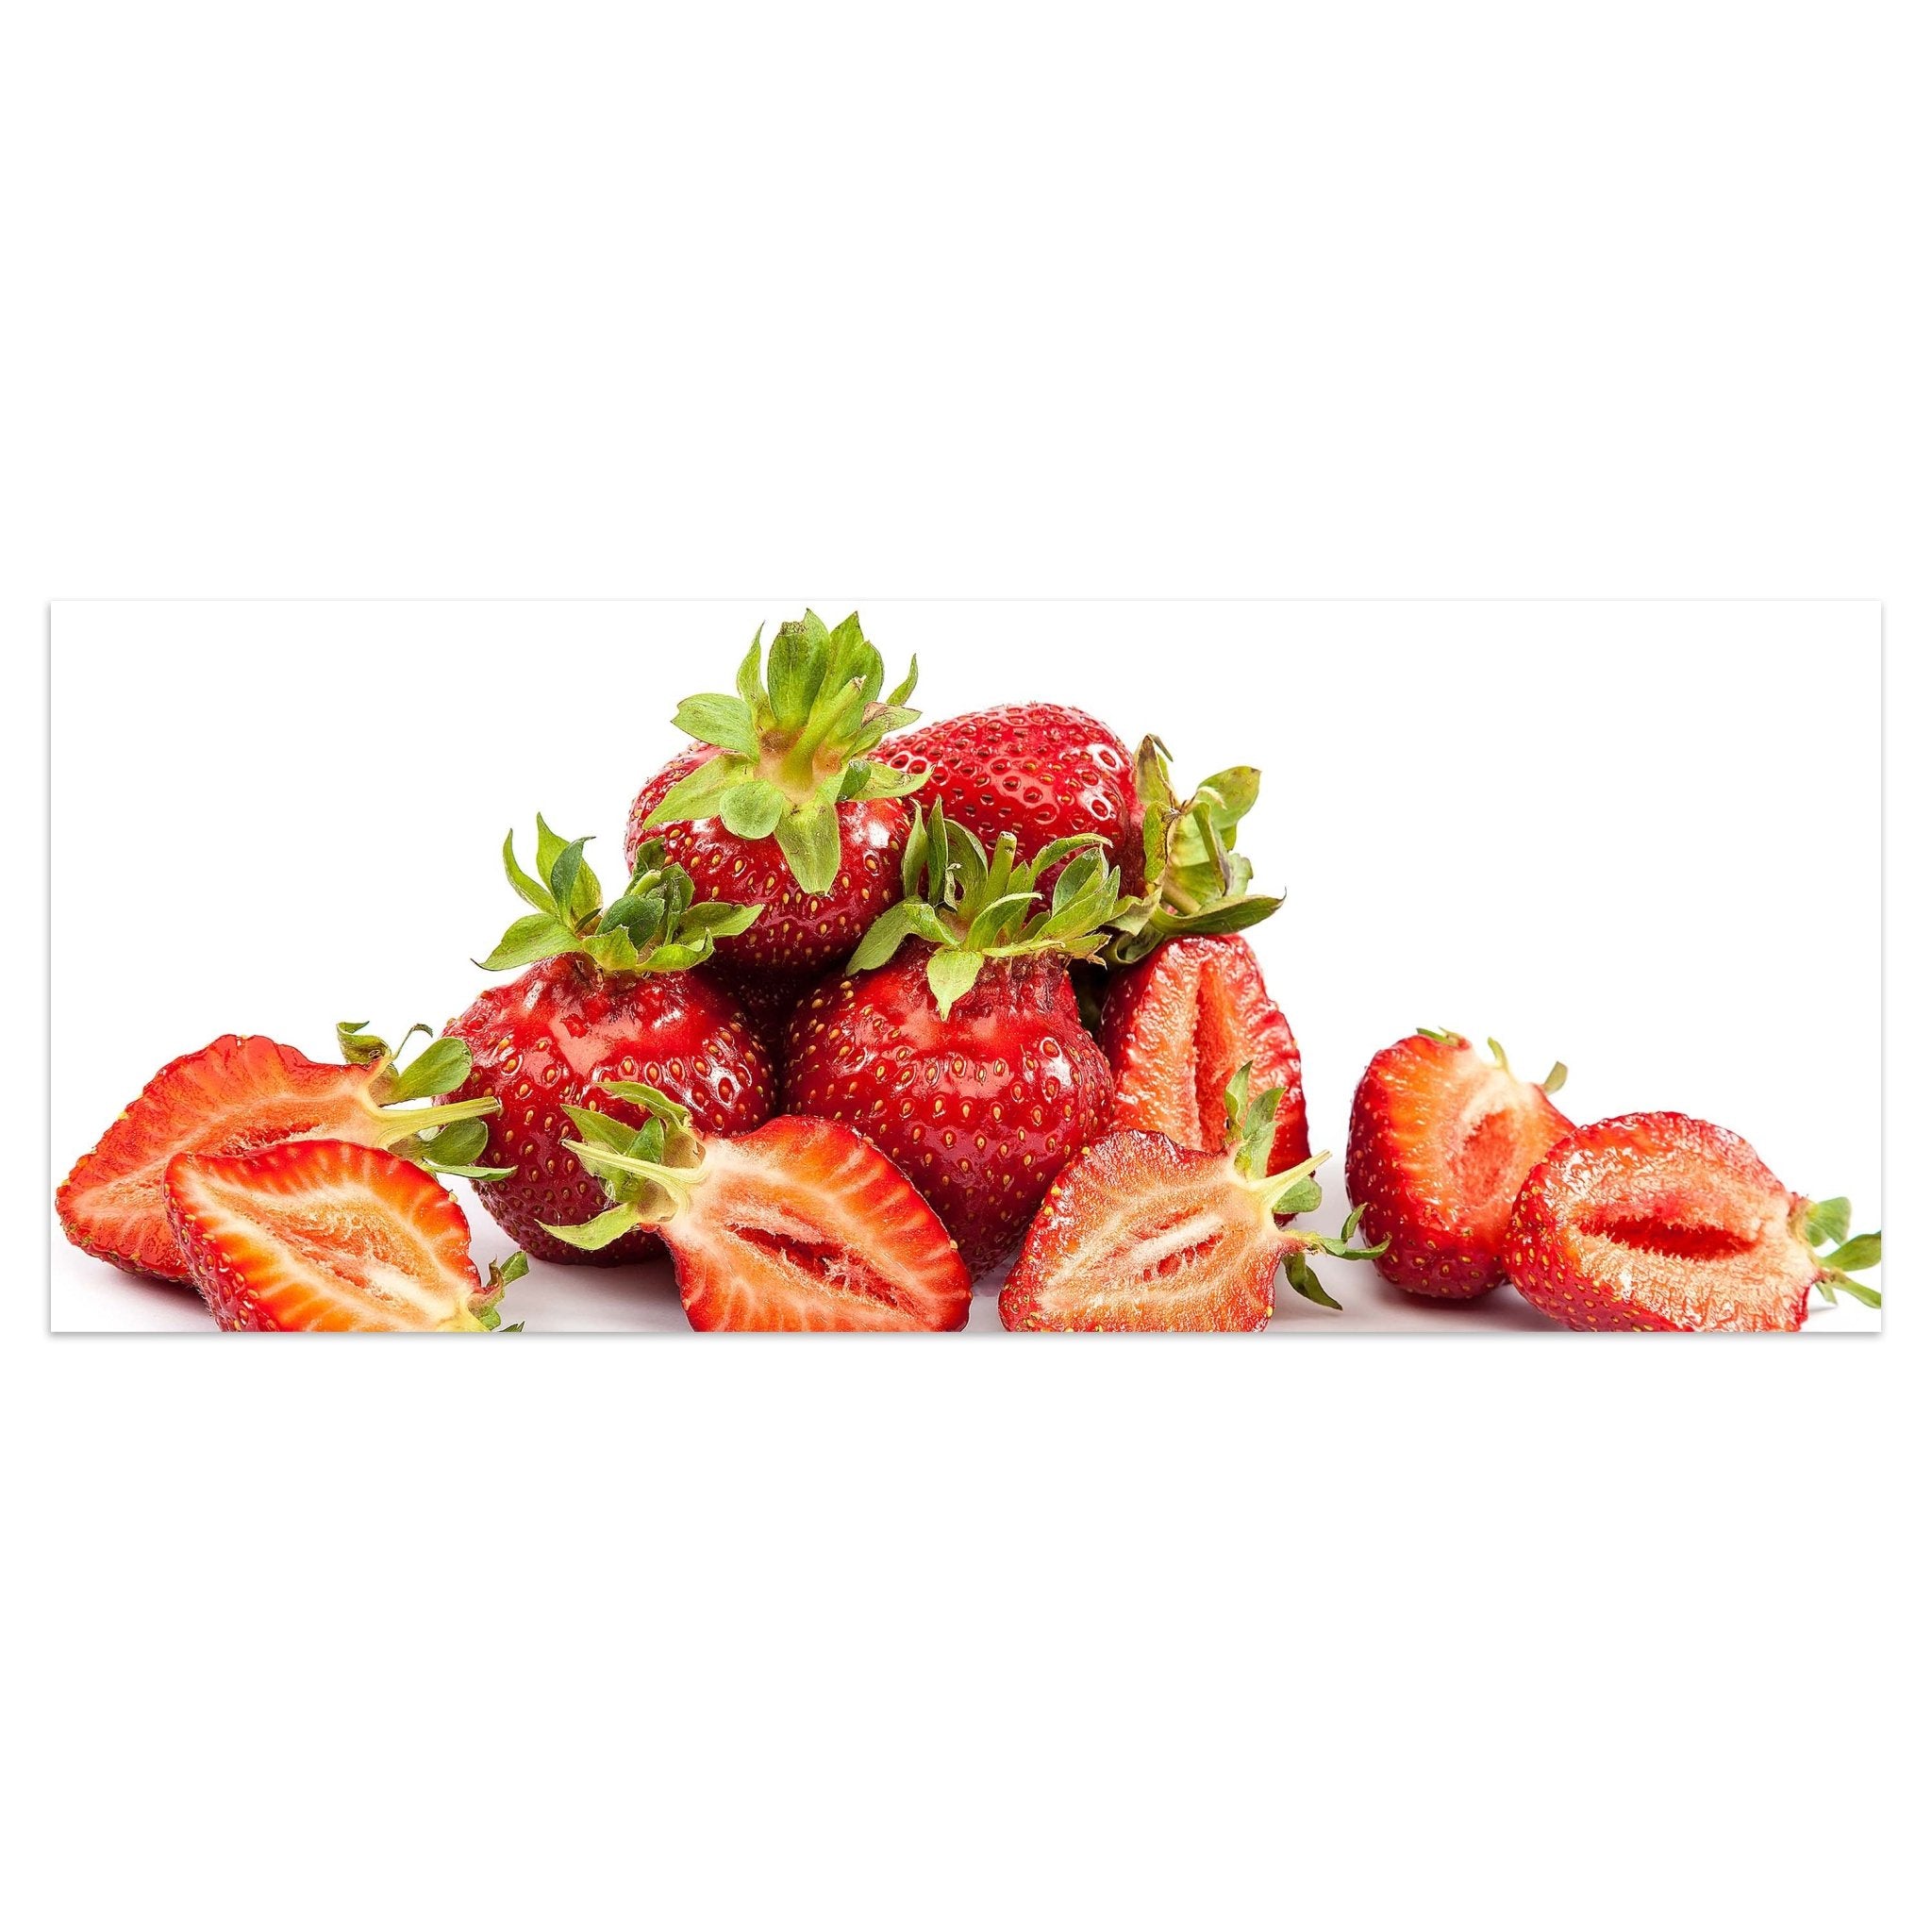 Leinwandbild Erdbeeren M0734 kaufen - Bild 1